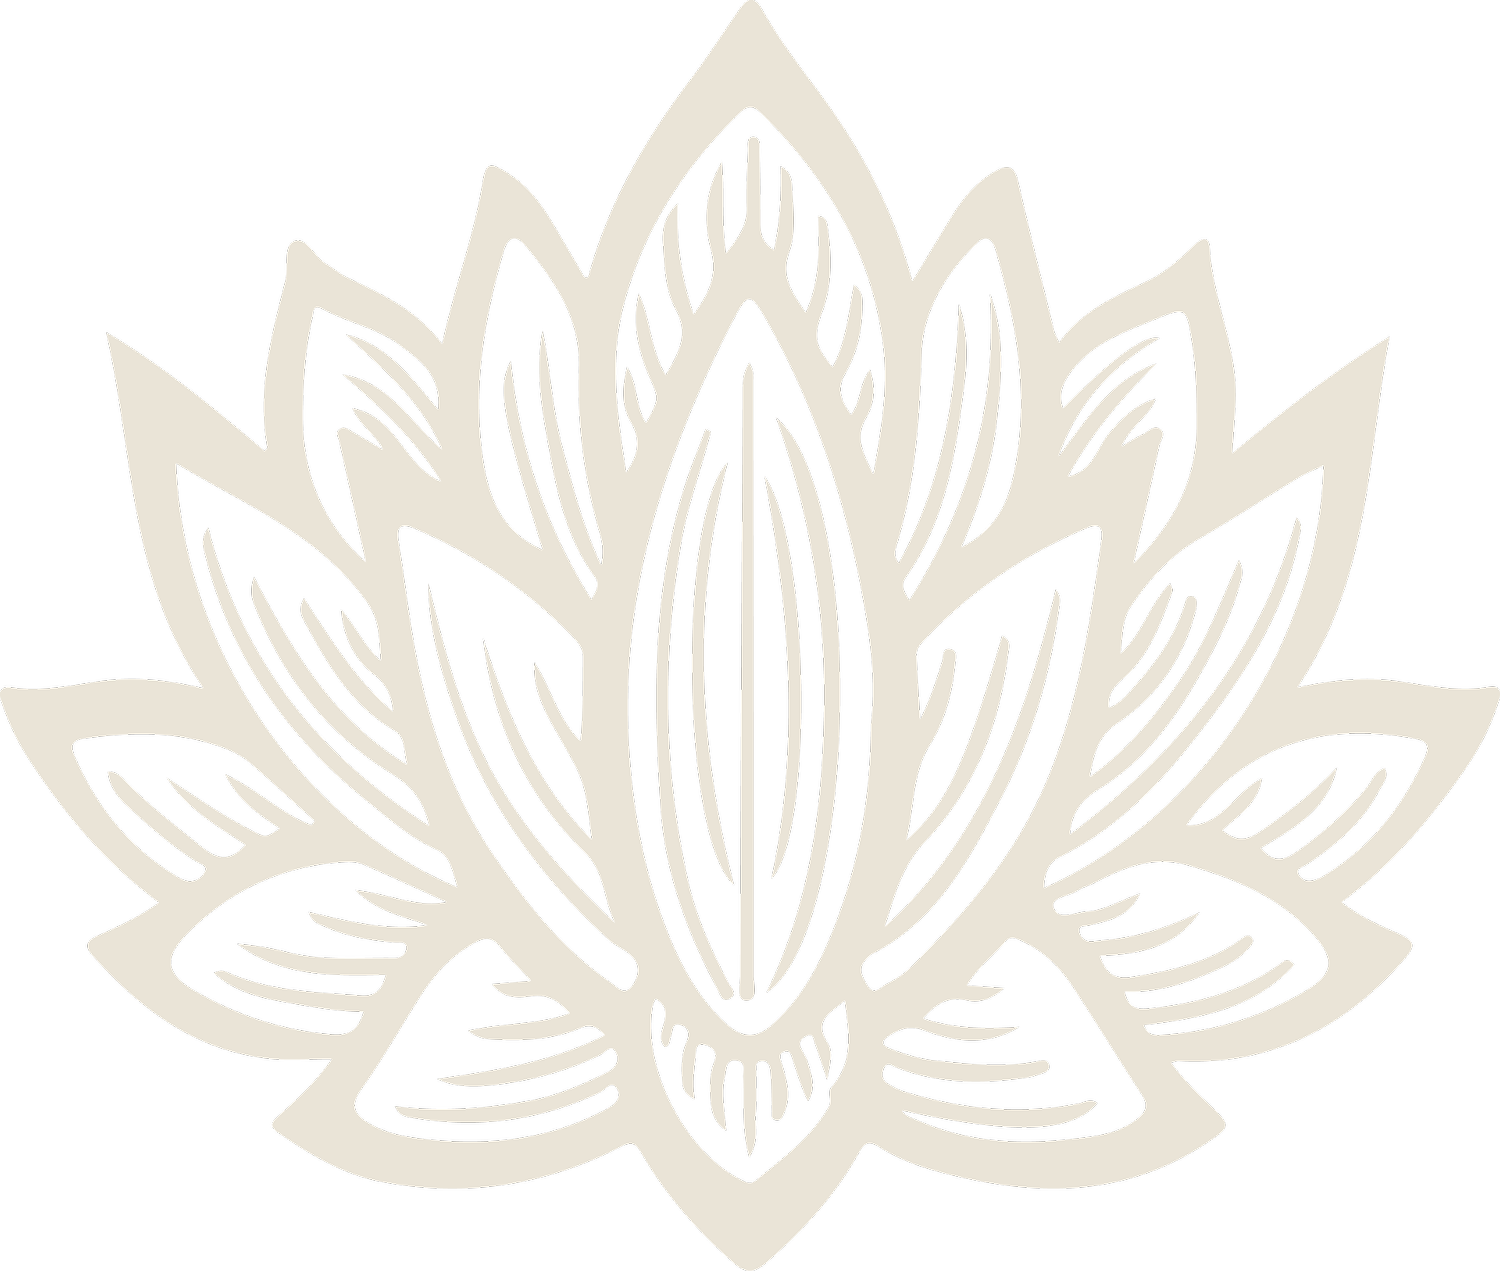 Electric Lotus Tattoo